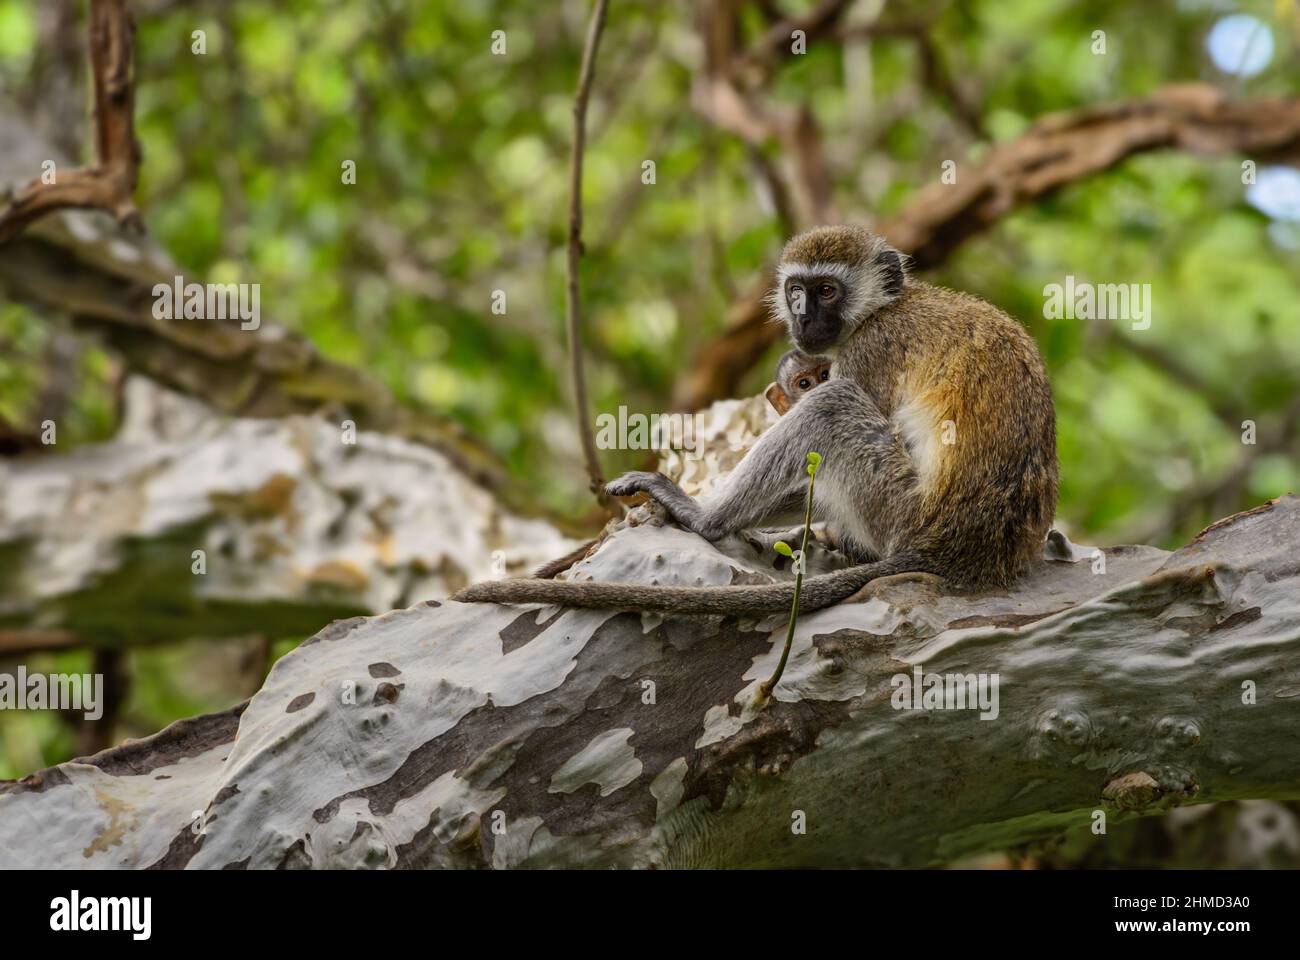 Green Monkey - Chlorocebus sabaeus, beau primate des buissons et des bois africains, Taita Hills, Kenya. Banque D'Images